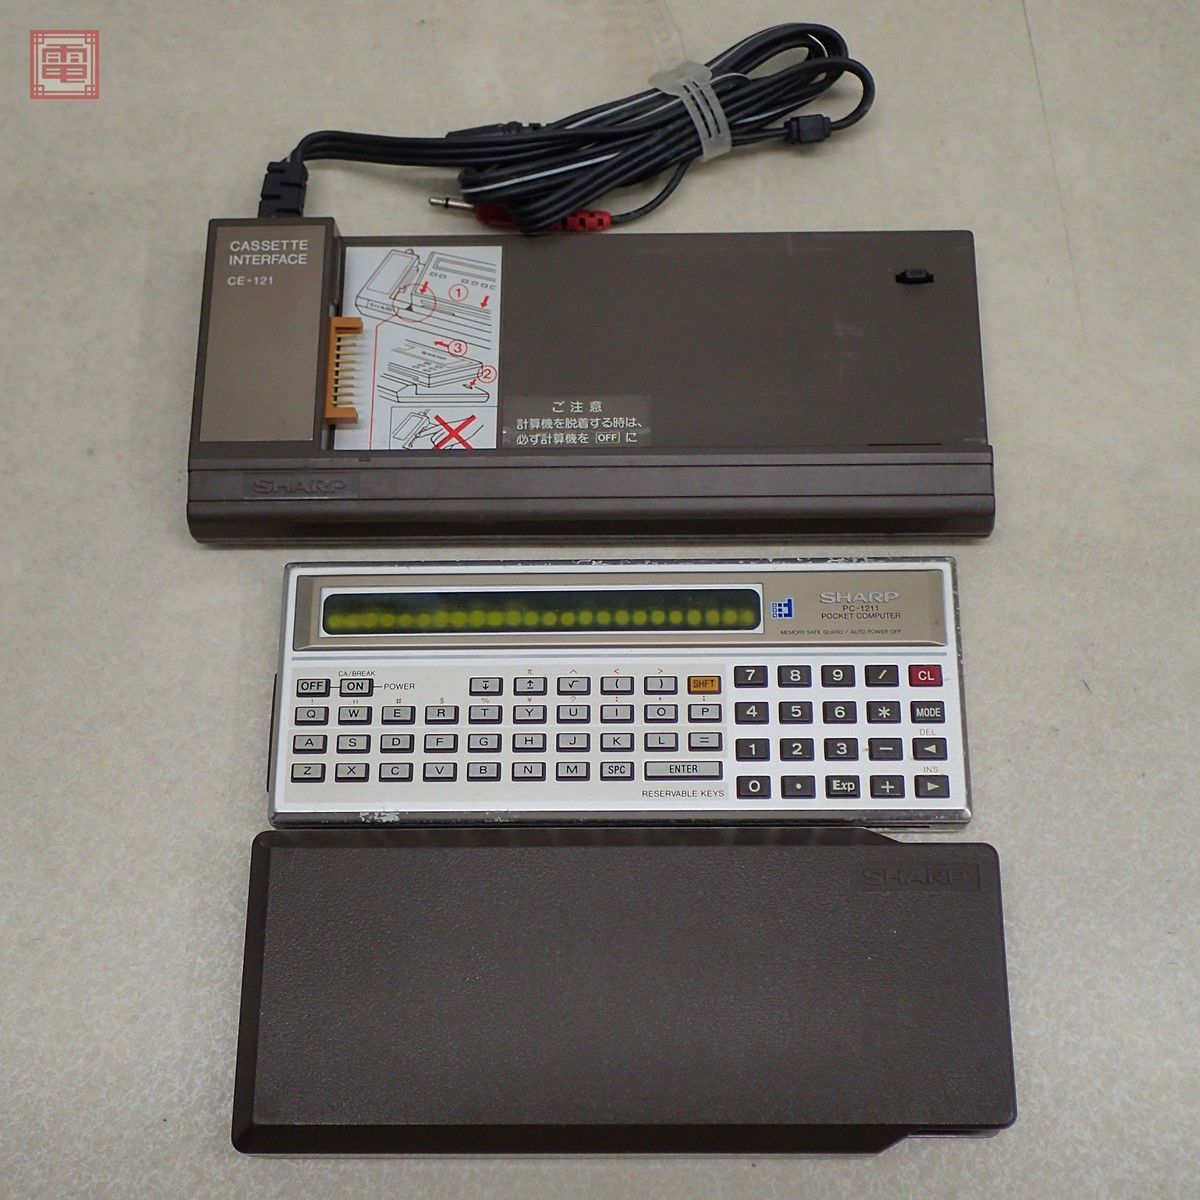 SHARP ポケットコンピュータ PC-1211 + カセットインターフェース CE-121 まとめてセット シャープ ポケコン ジャンク【10_画像1